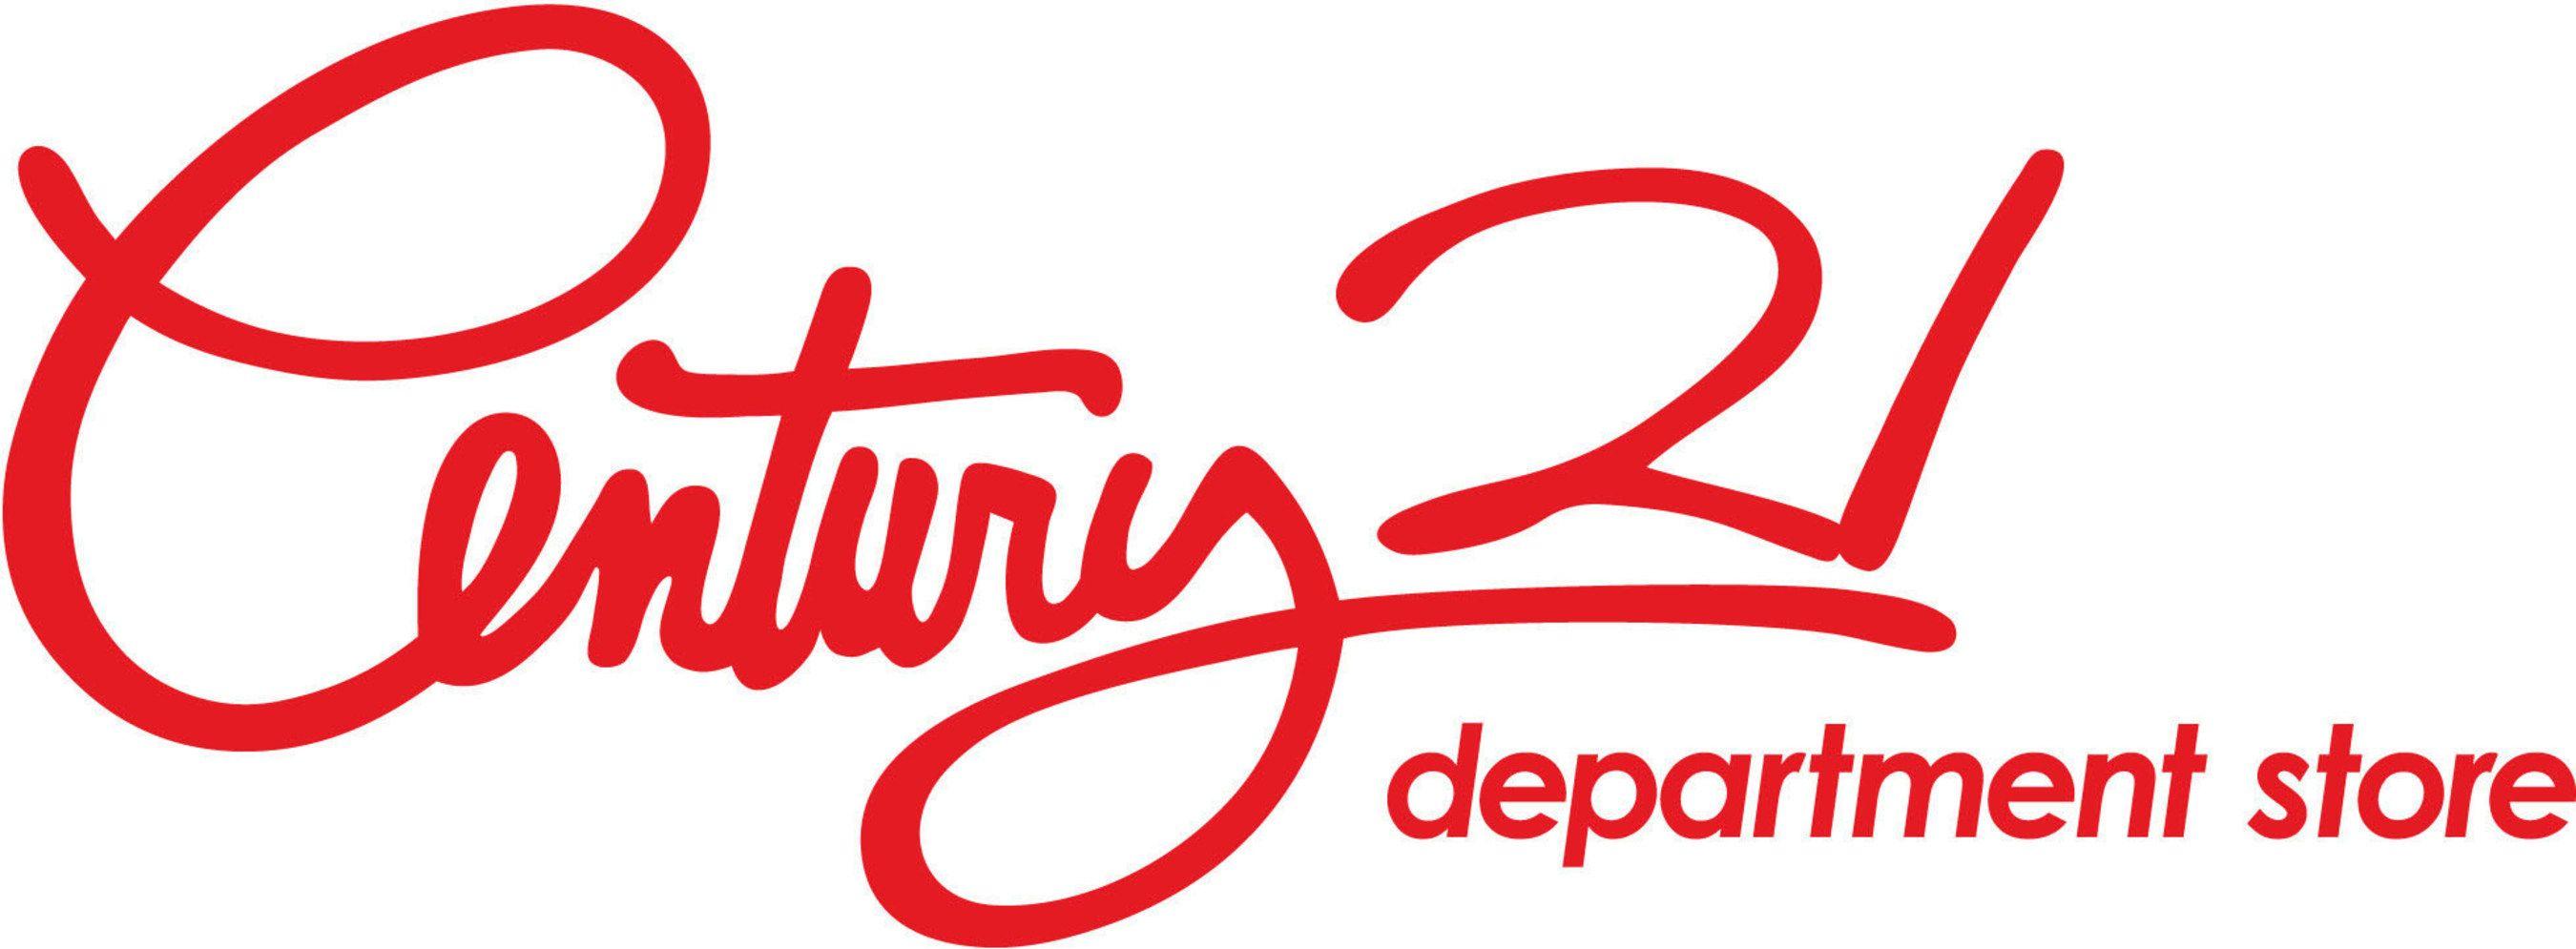 C21 Logo - Century 21 Logos